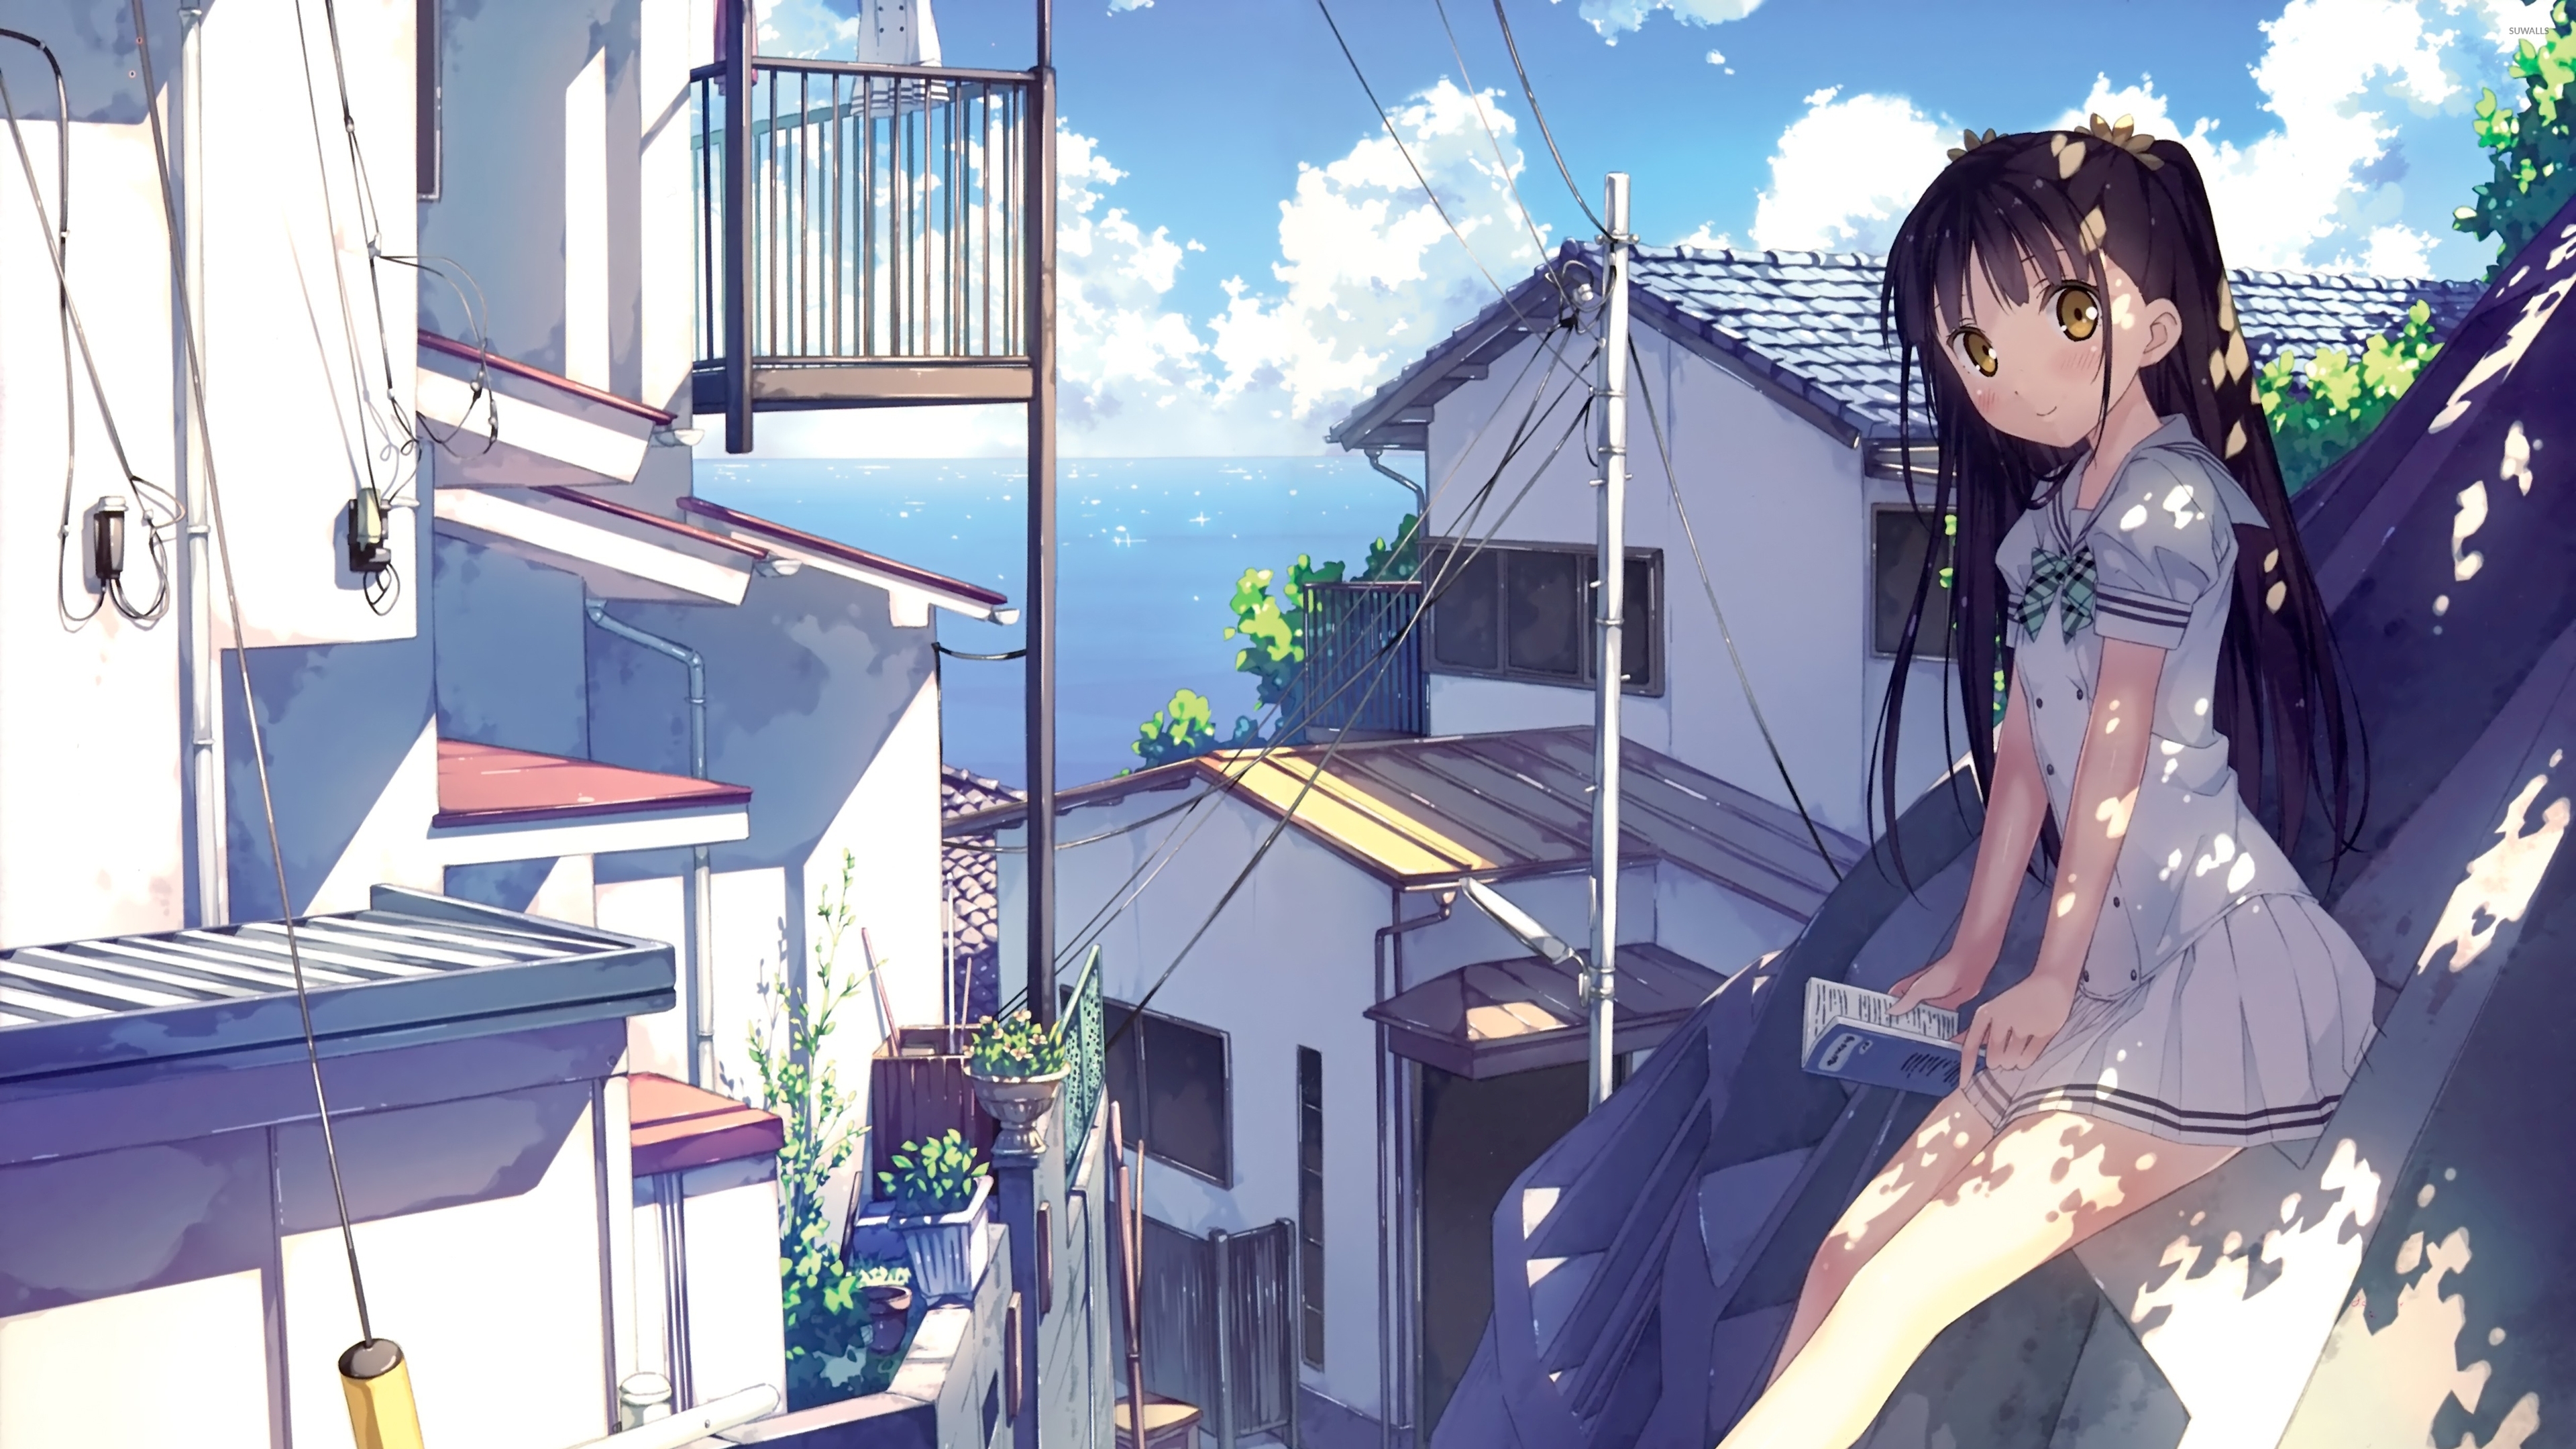 Anime Girl Reading A Book - 3840x2160 Wallpaper 